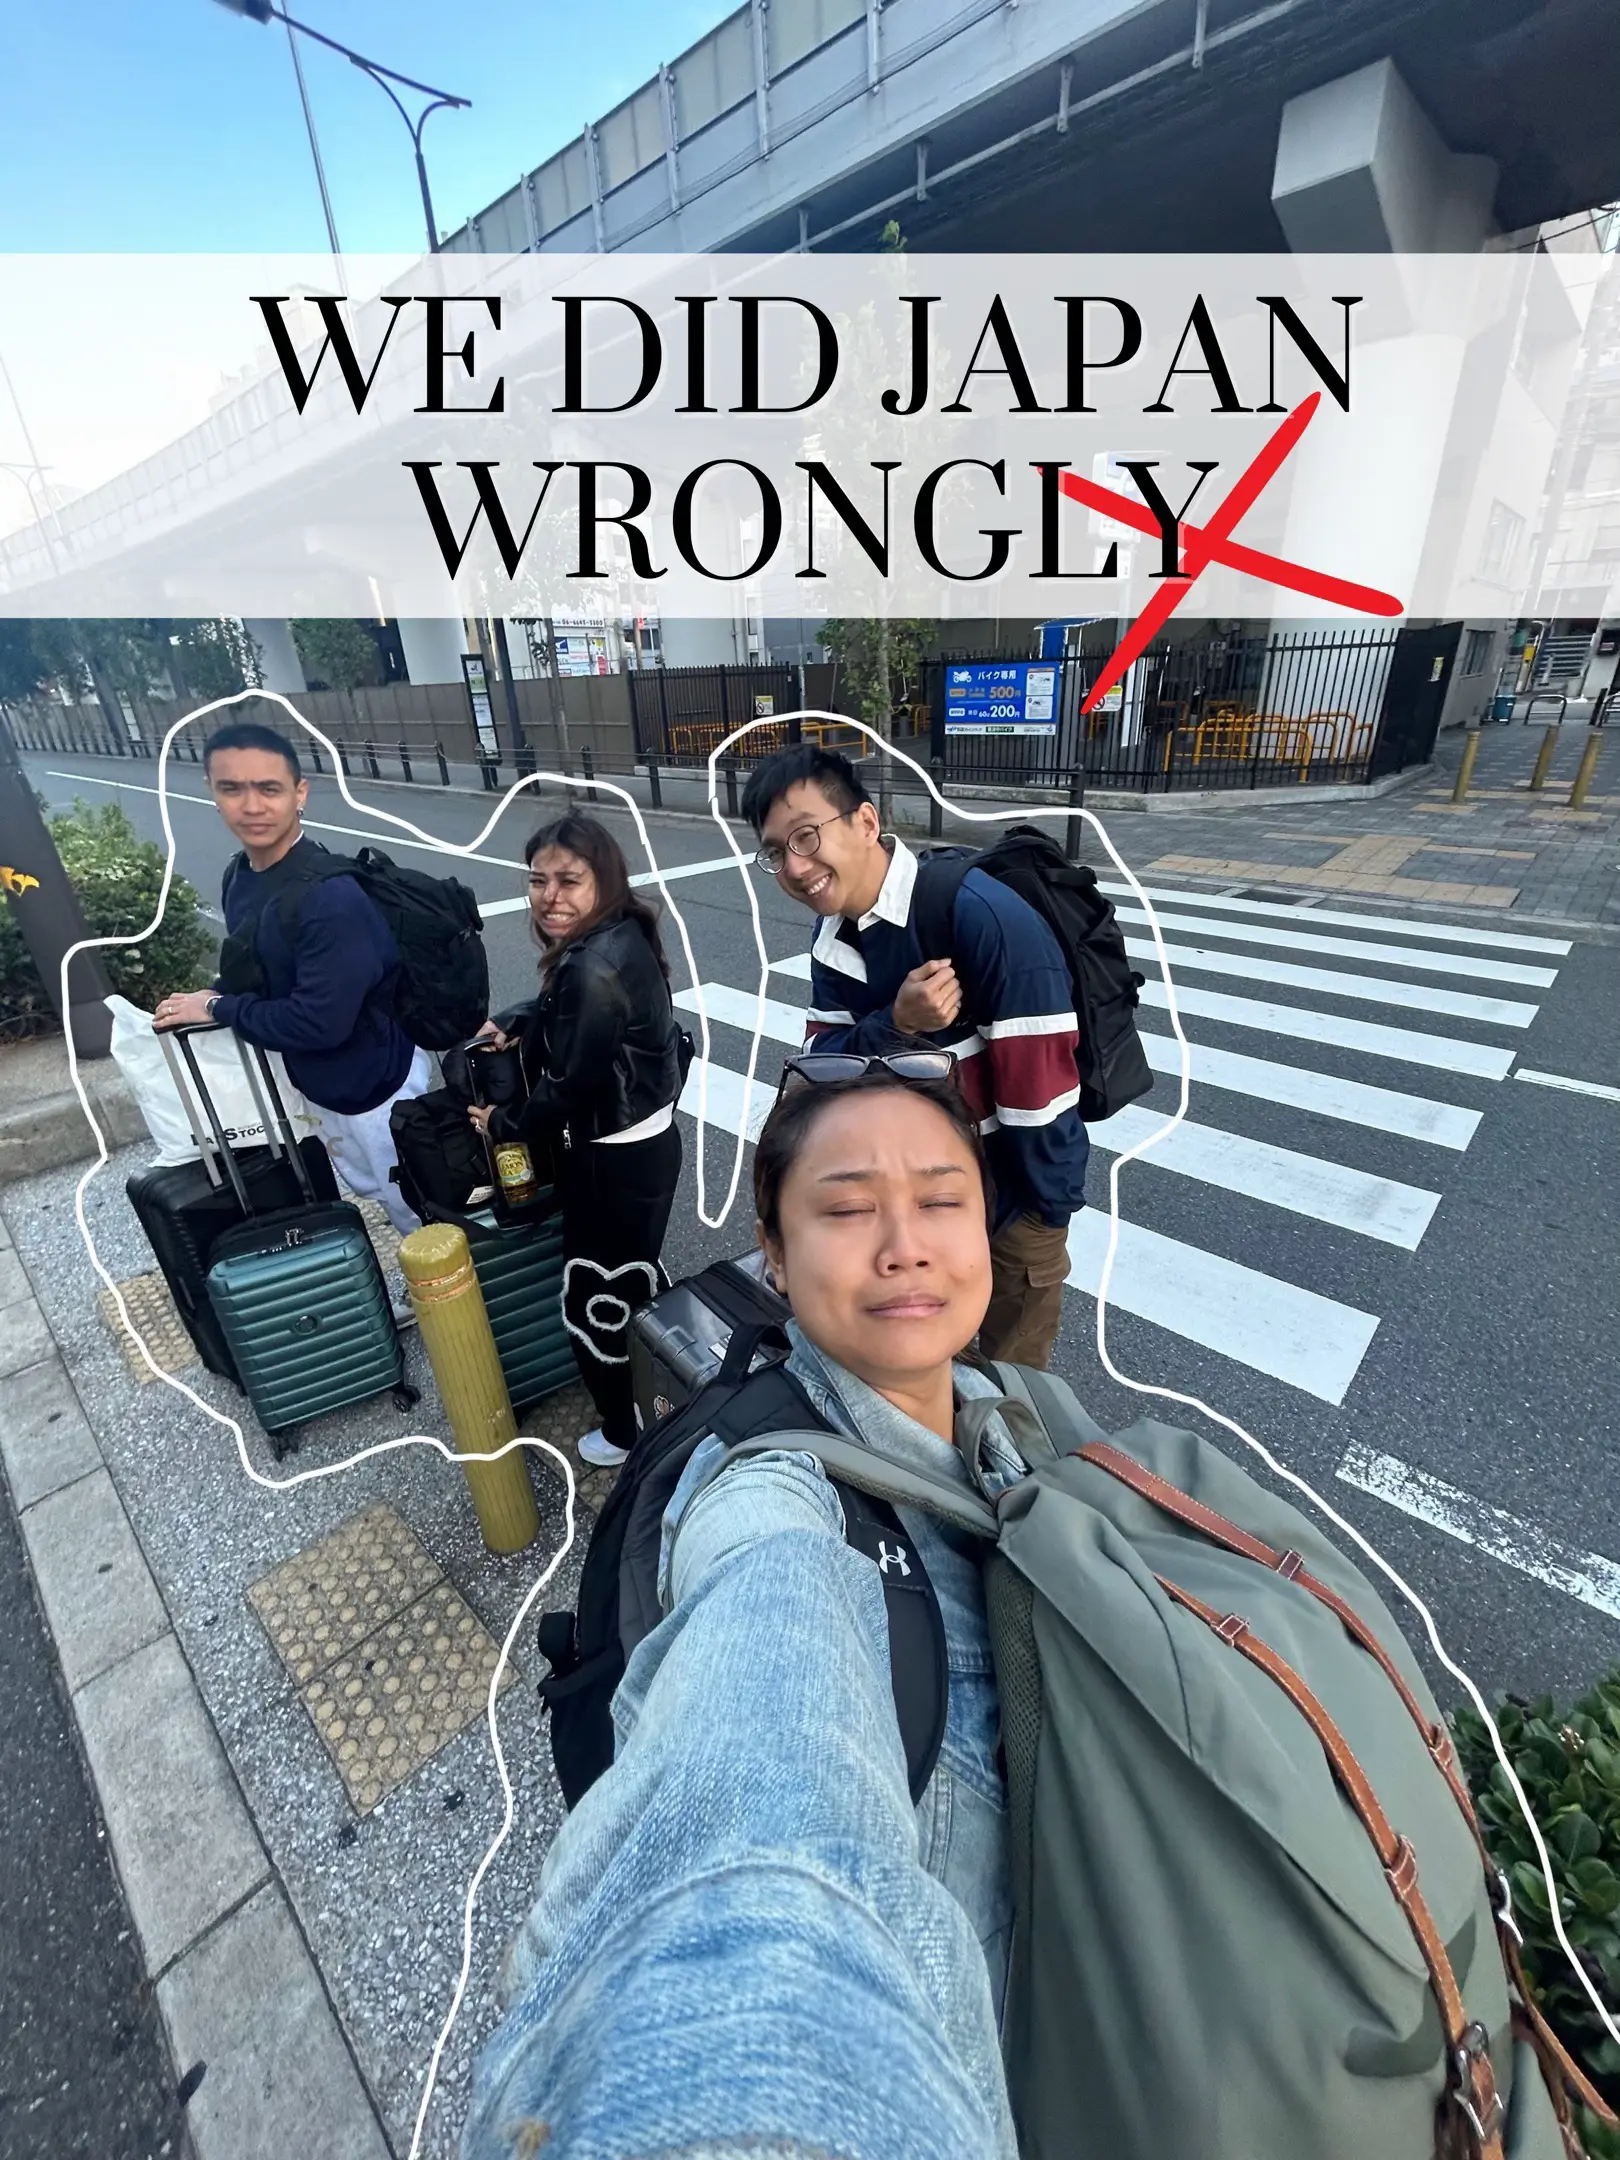 Japan Trip REGRETS ❌'s images(0)